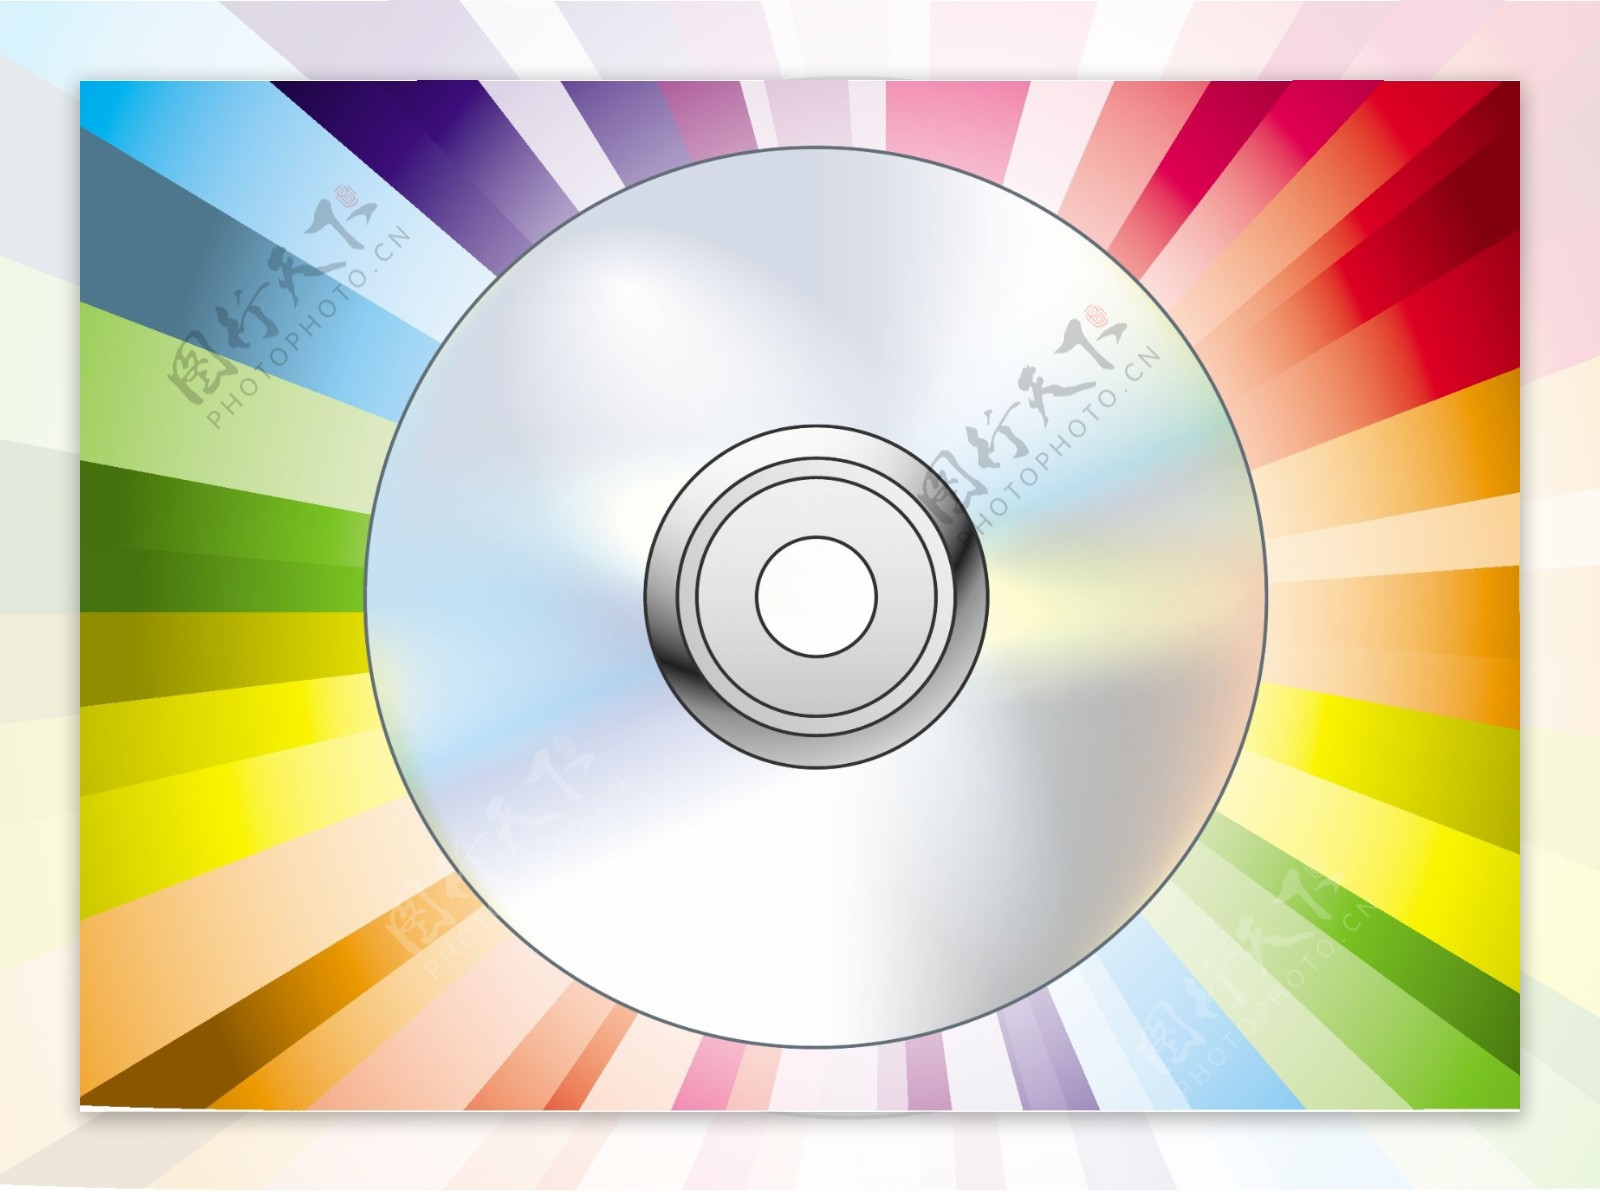 cddvd光盘载体